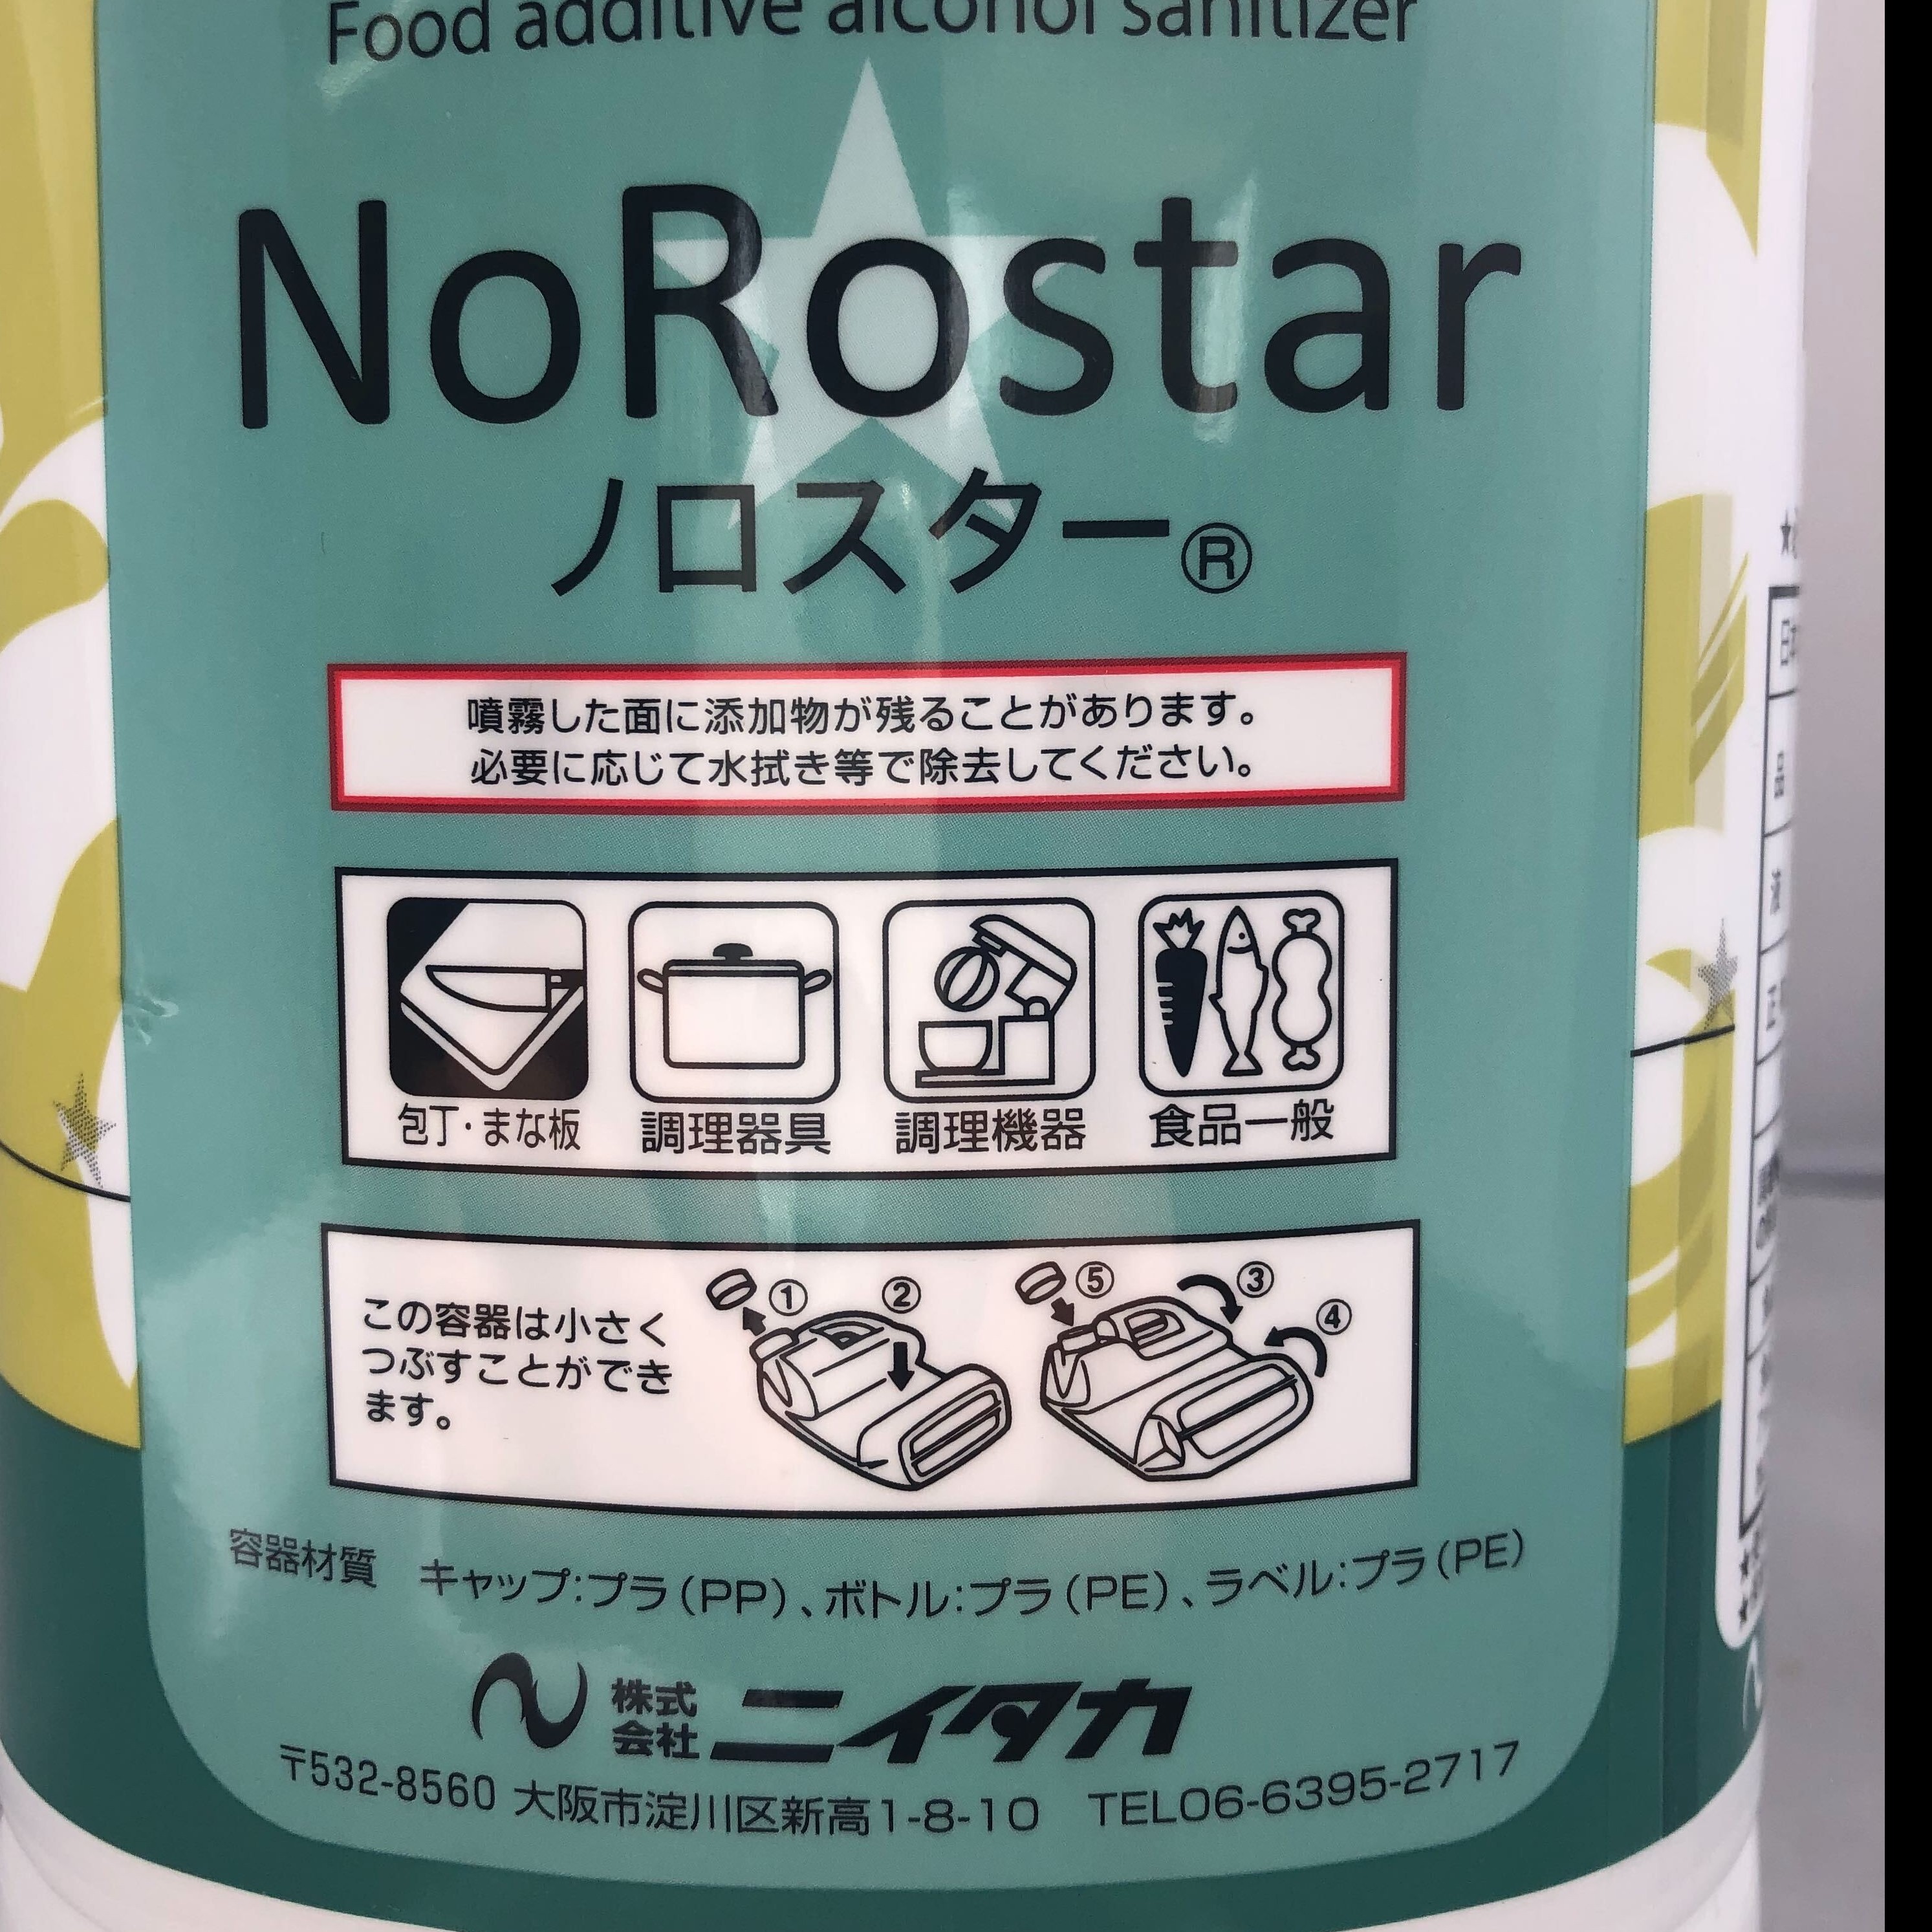 ノロスター【食品添加物エタノール製剤】 | ニイタカ / 5L | 【業務用 